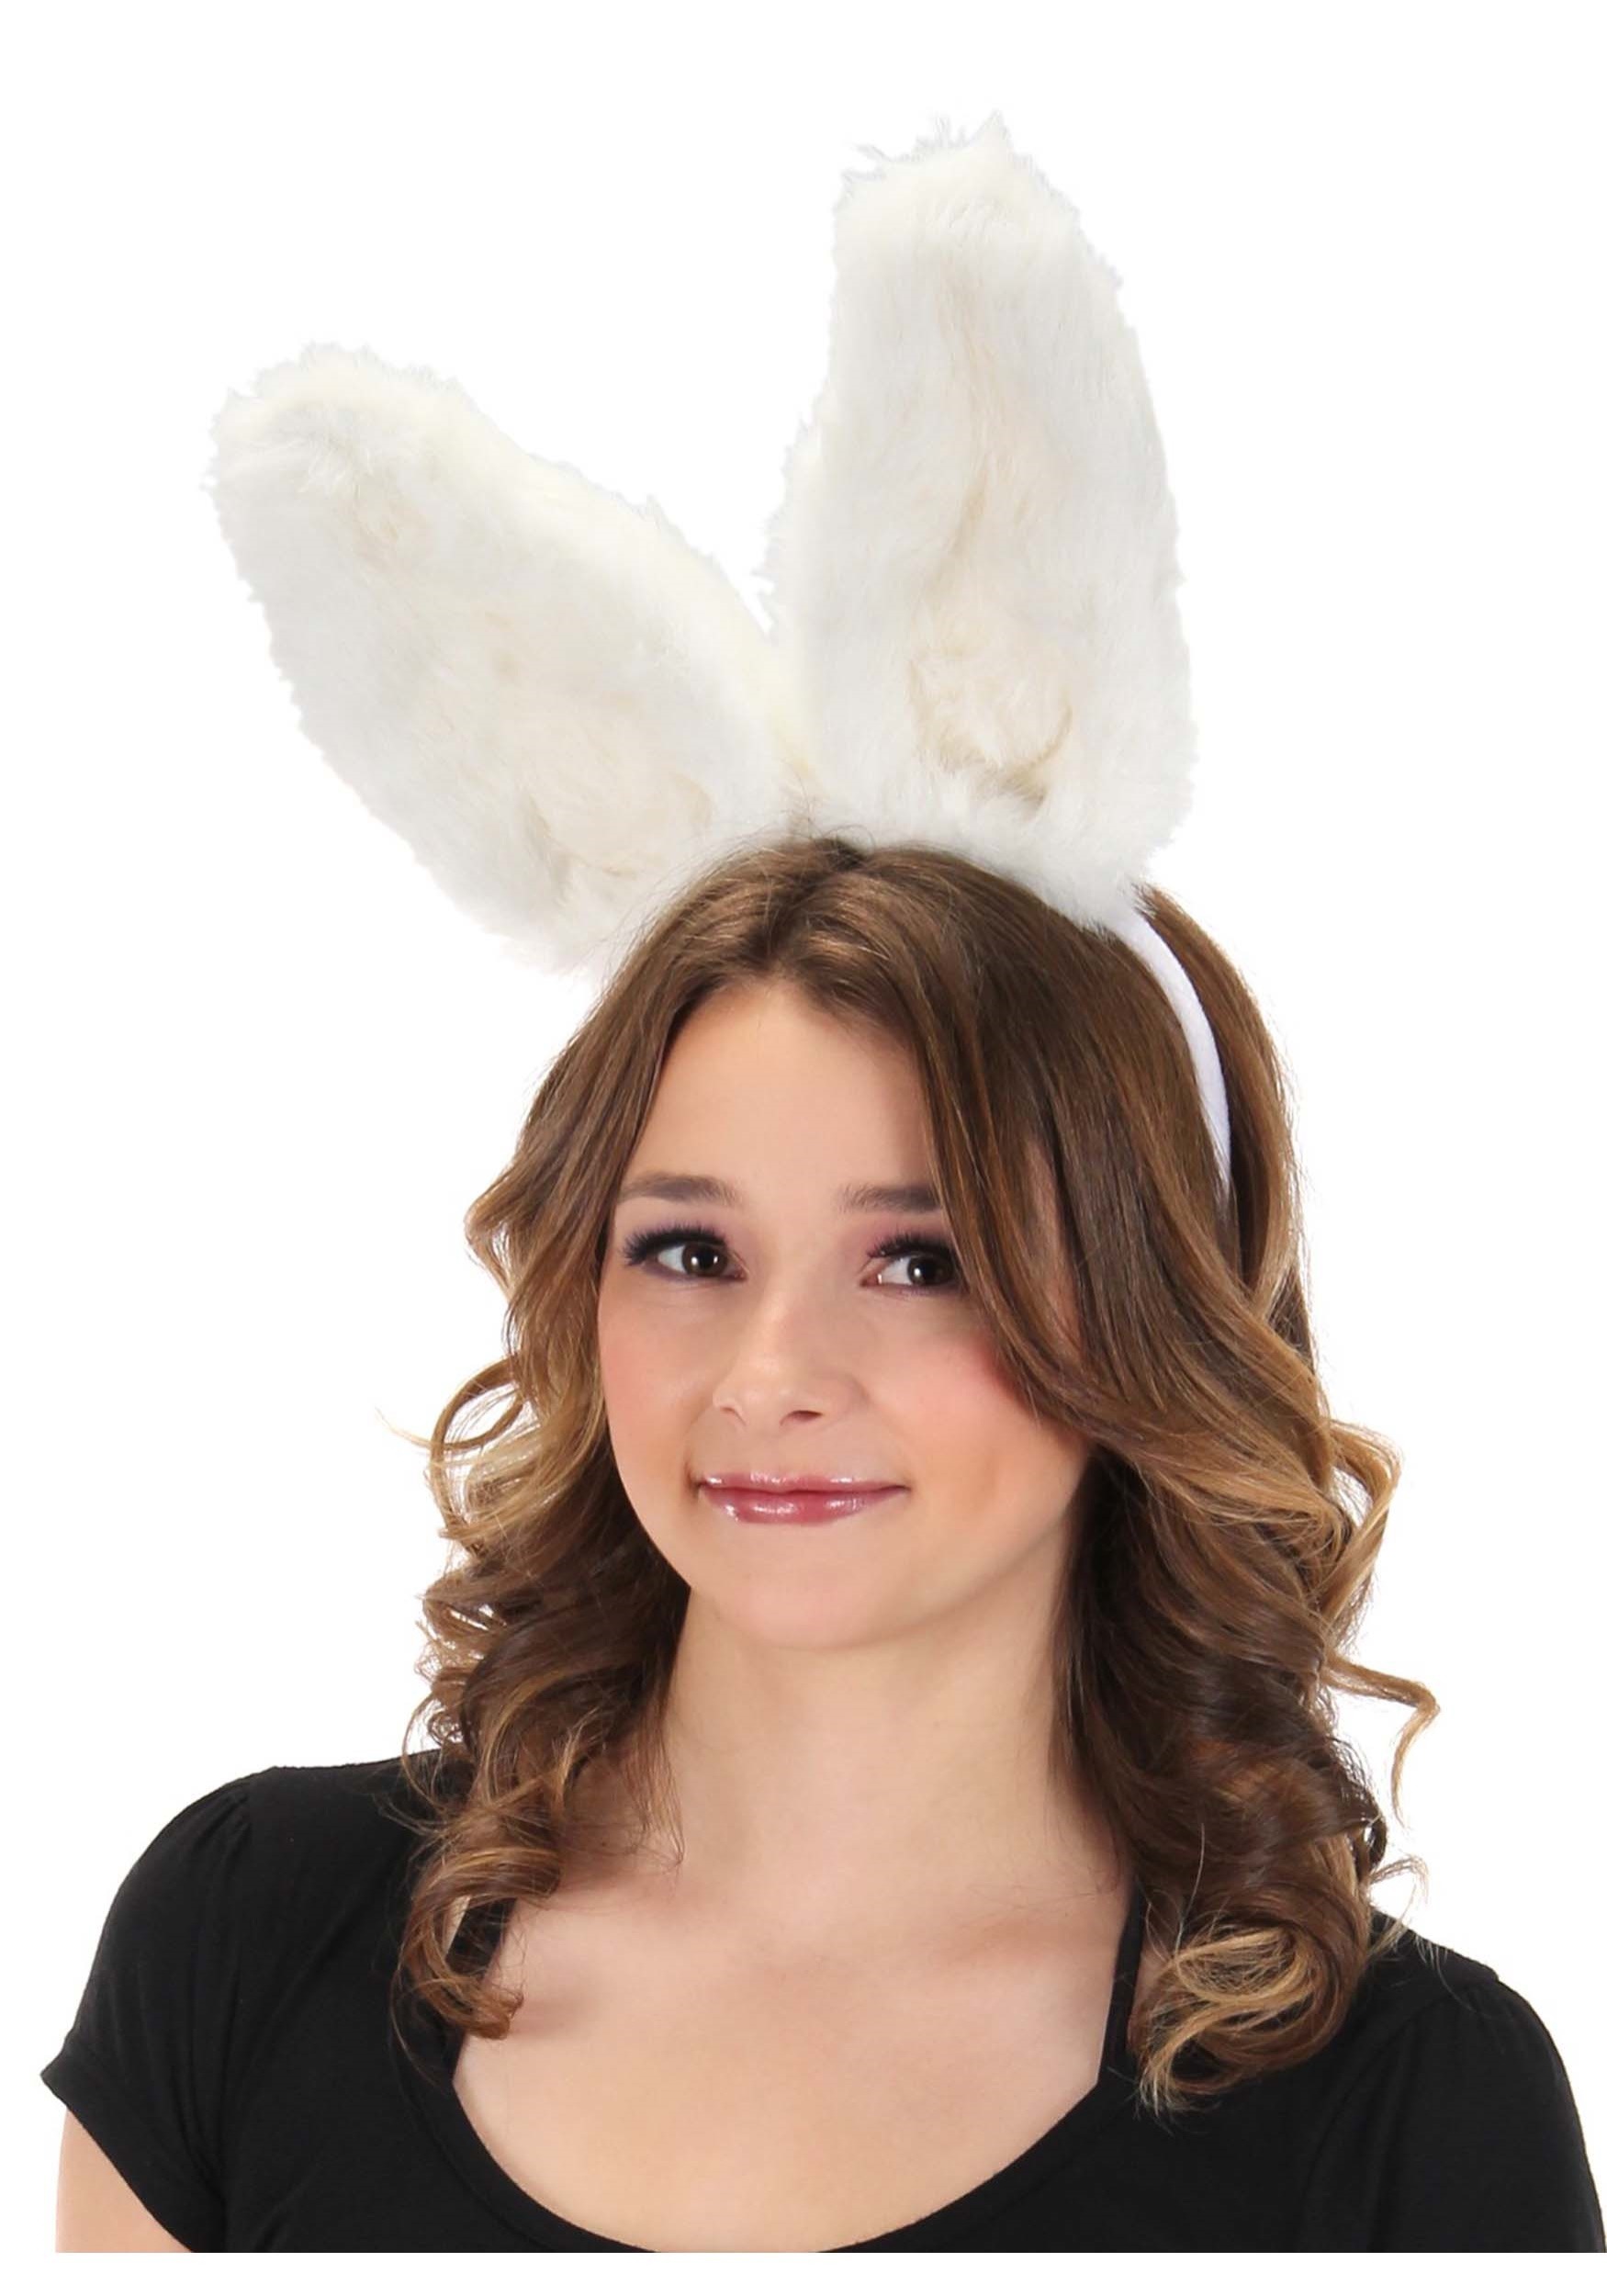 White Bunny Bendable Ears Headband Costume